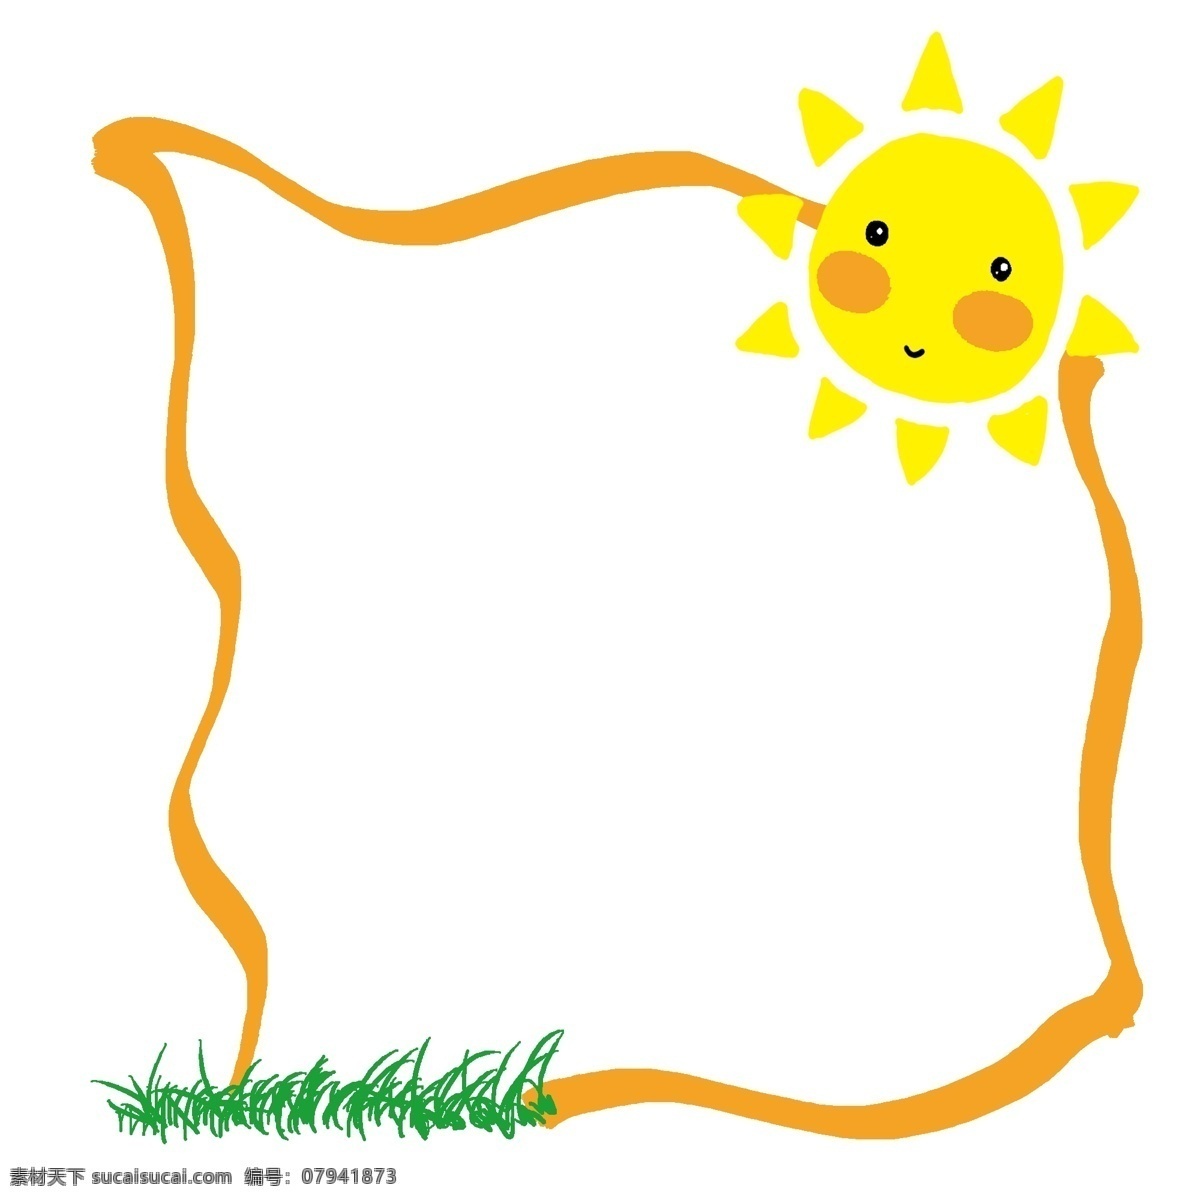 太阳 边框 卡通 插画 火红的太阳 卡通插画 边框插画 框架 框子 框框 简易边框 太阳的边框